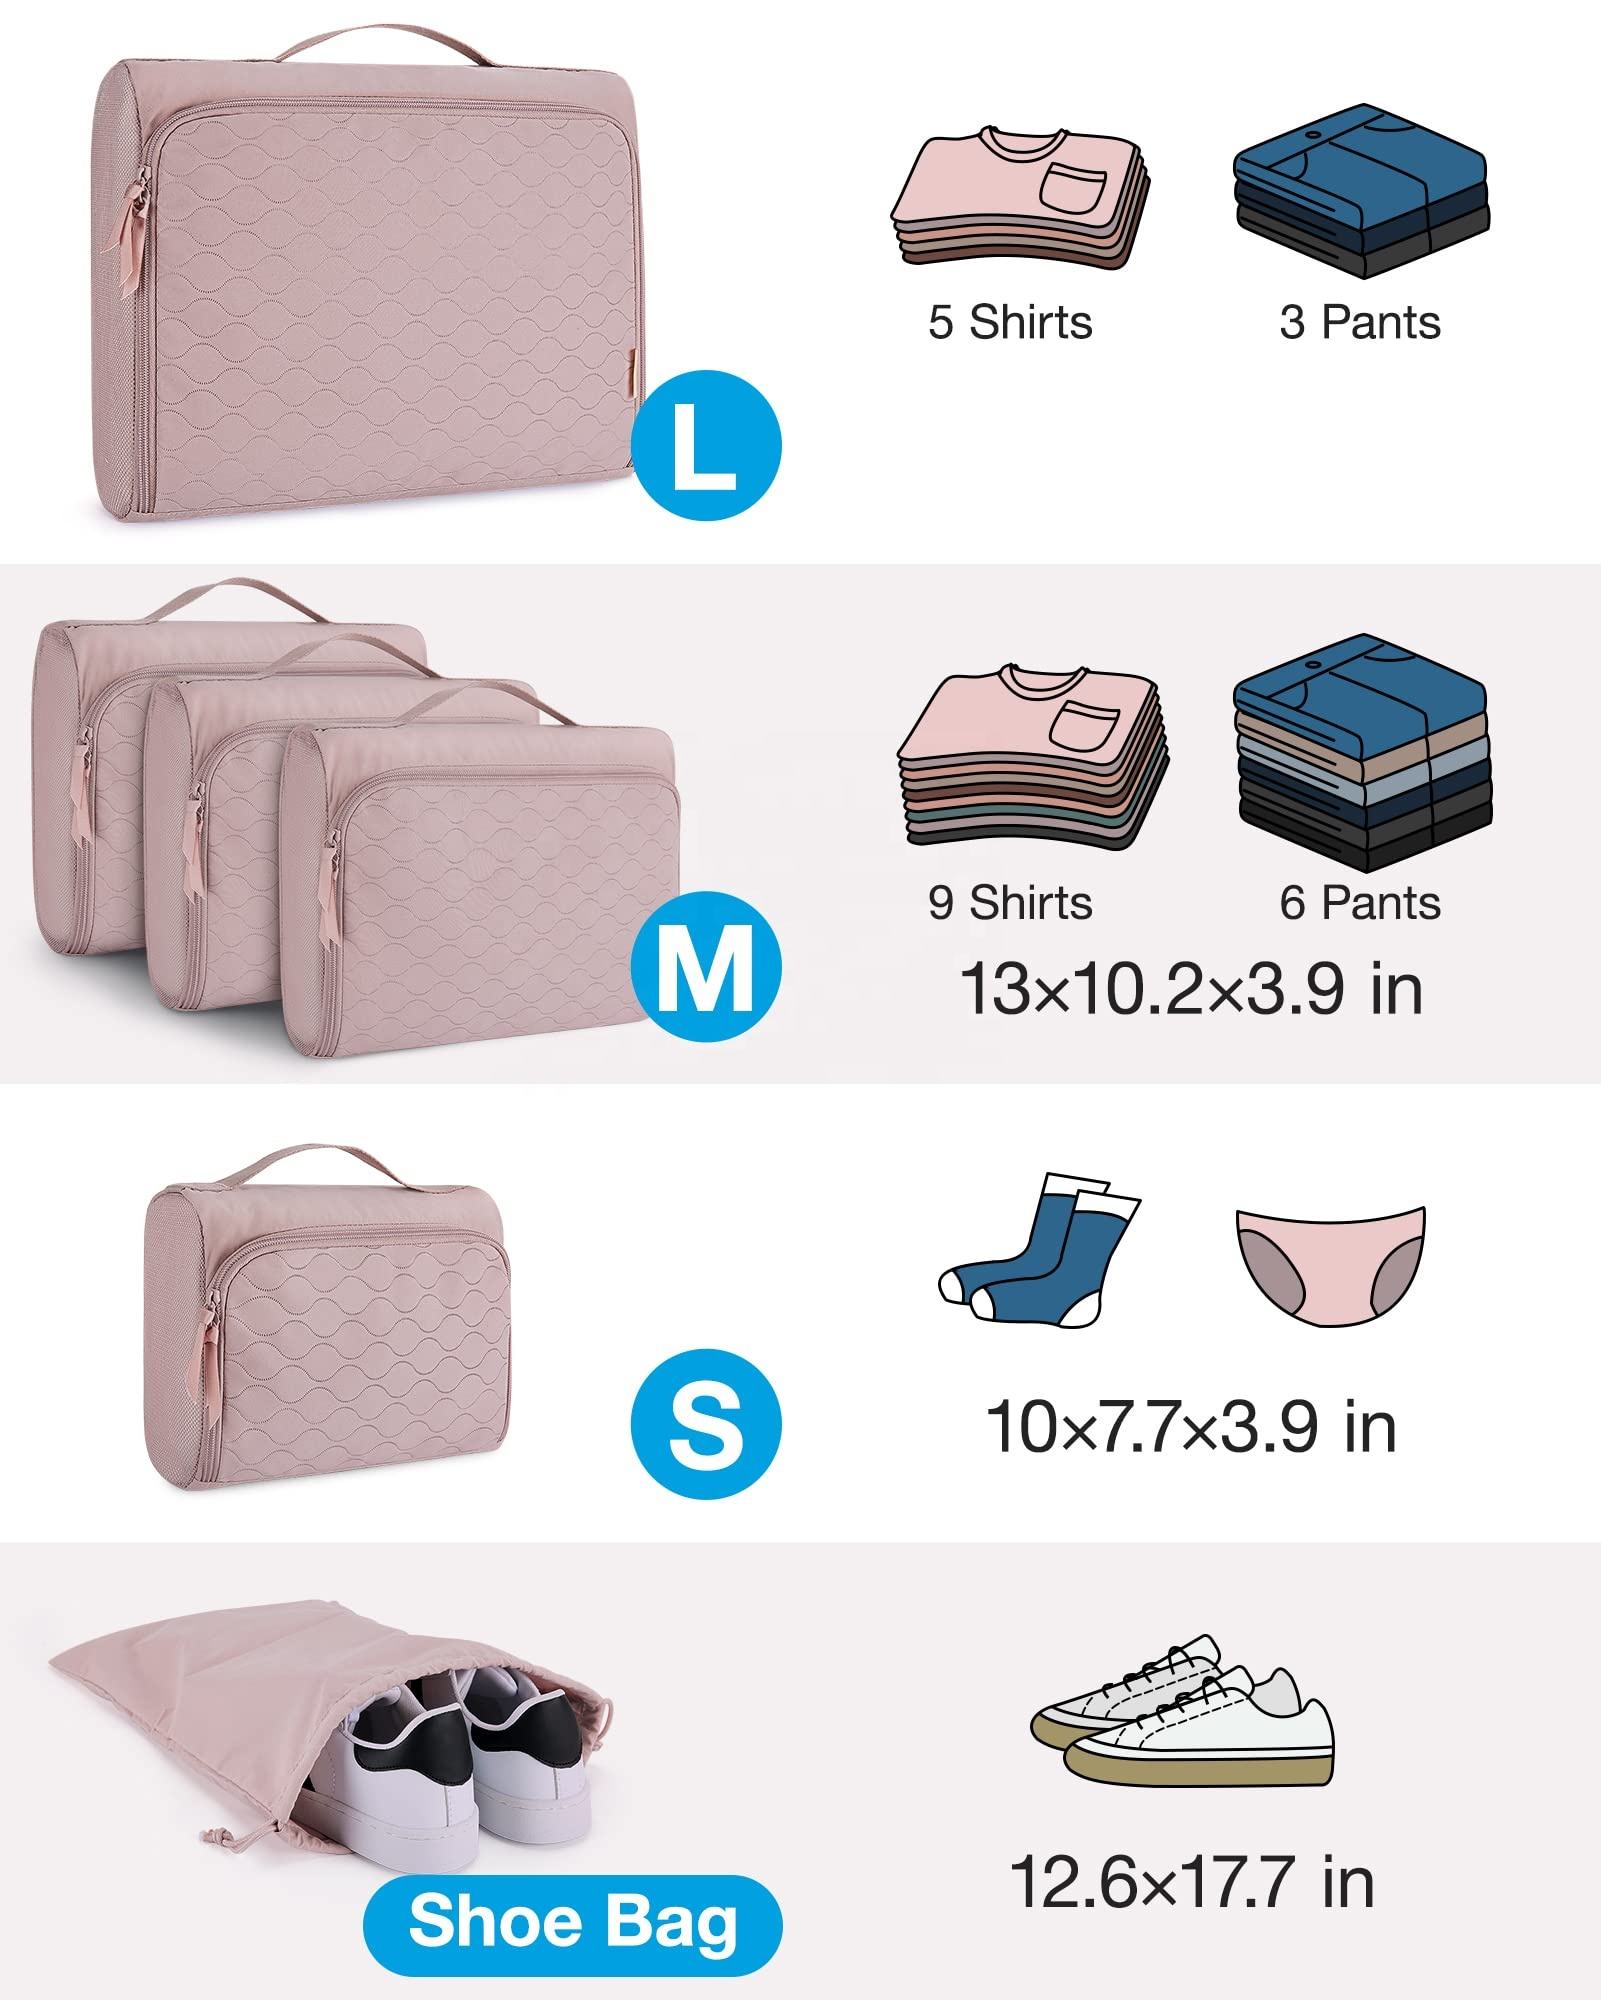 benutzerdefiniertes Logo 6-teiliges Reisetuch, Kofferwürfel, Gepäckorganisator, Taschen, Unterwäsche, Wochenend-Kompressionspackungswürfel für die Reise